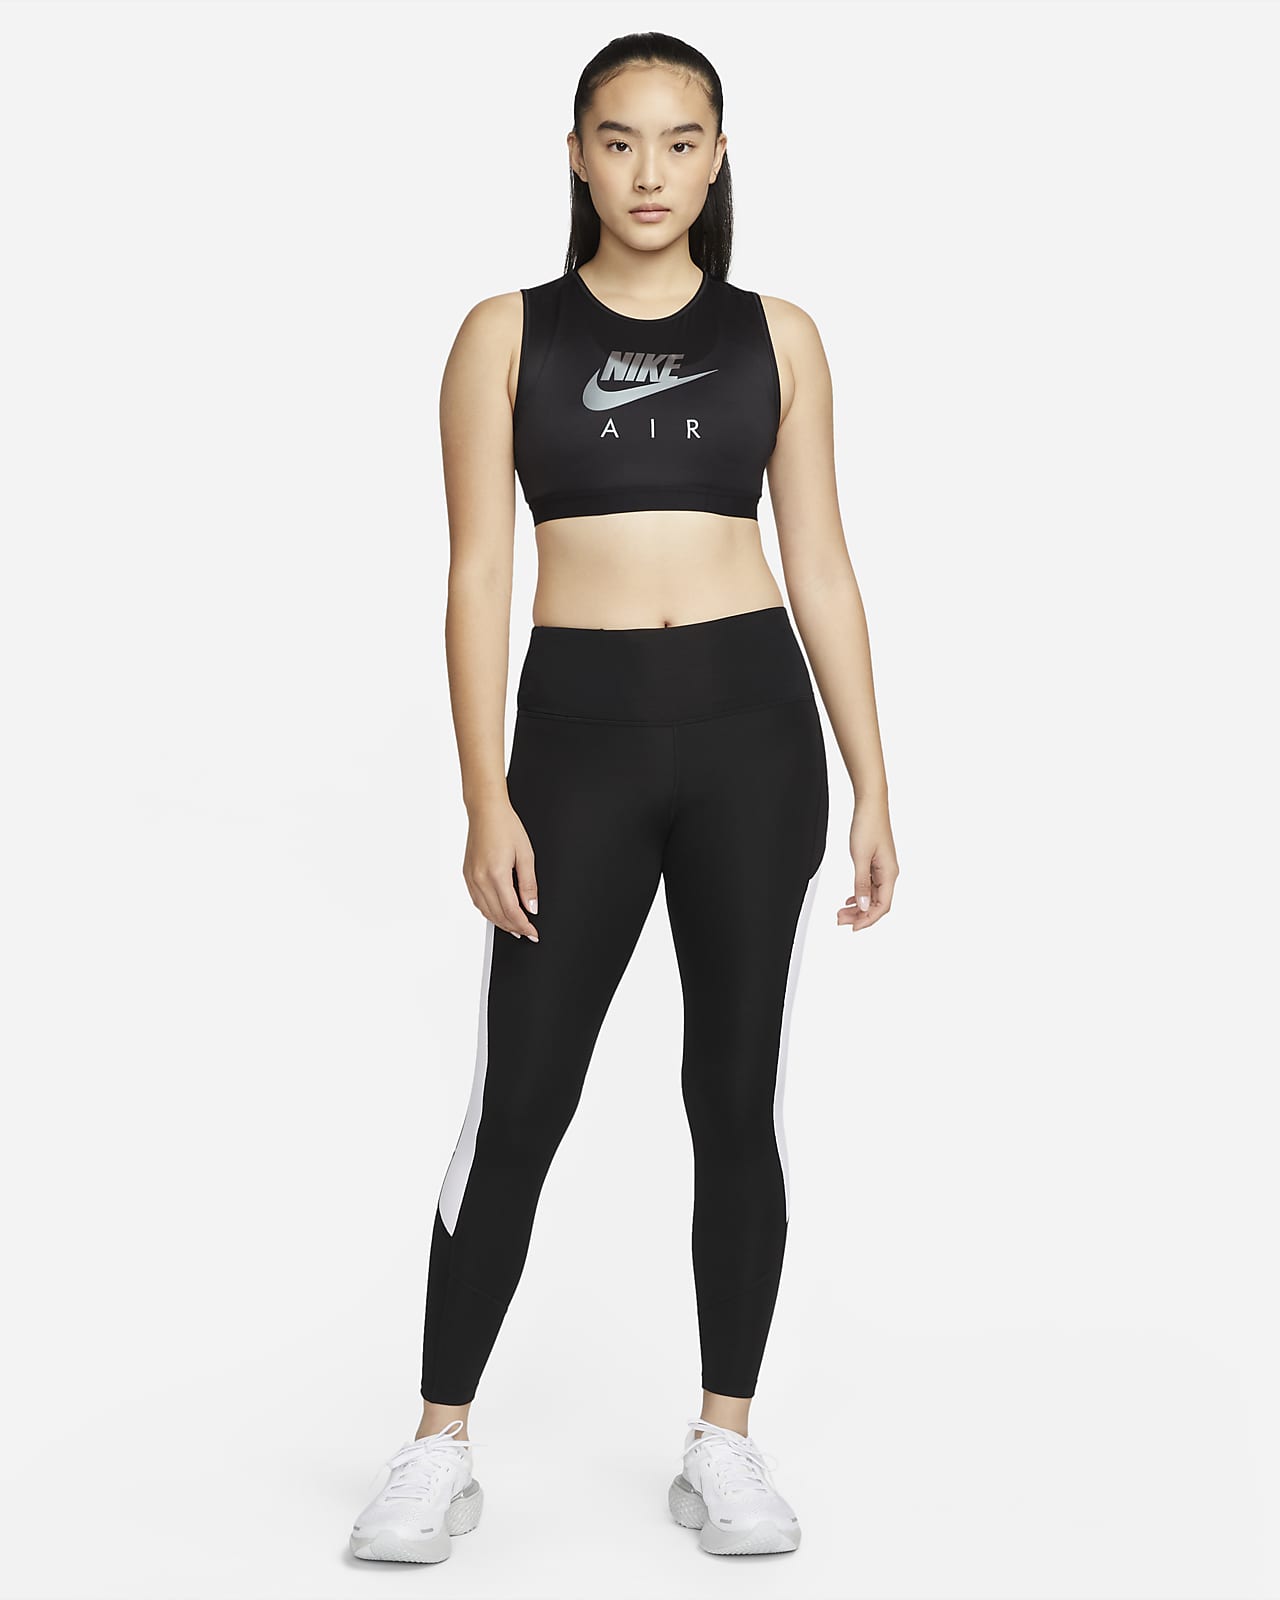 Nike Womens Leggings, Nike Sports, Running & Workout Leggings